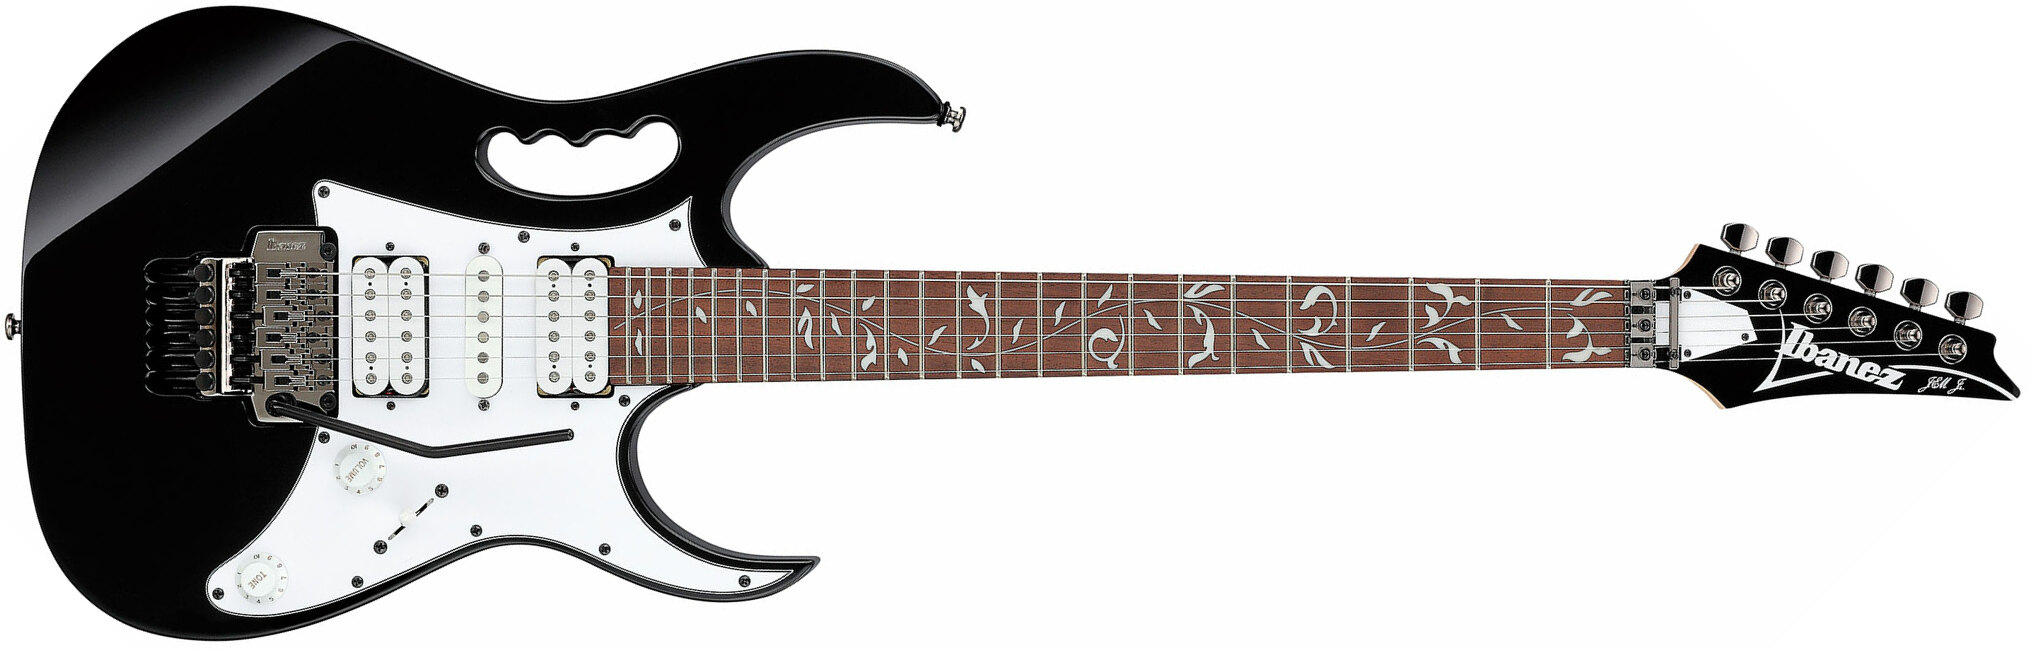 Ibanez Steve Vai Jemjr Bk Signature Hsh Fr Jat - Black - Guitarra eléctrica con forma de str. - Main picture